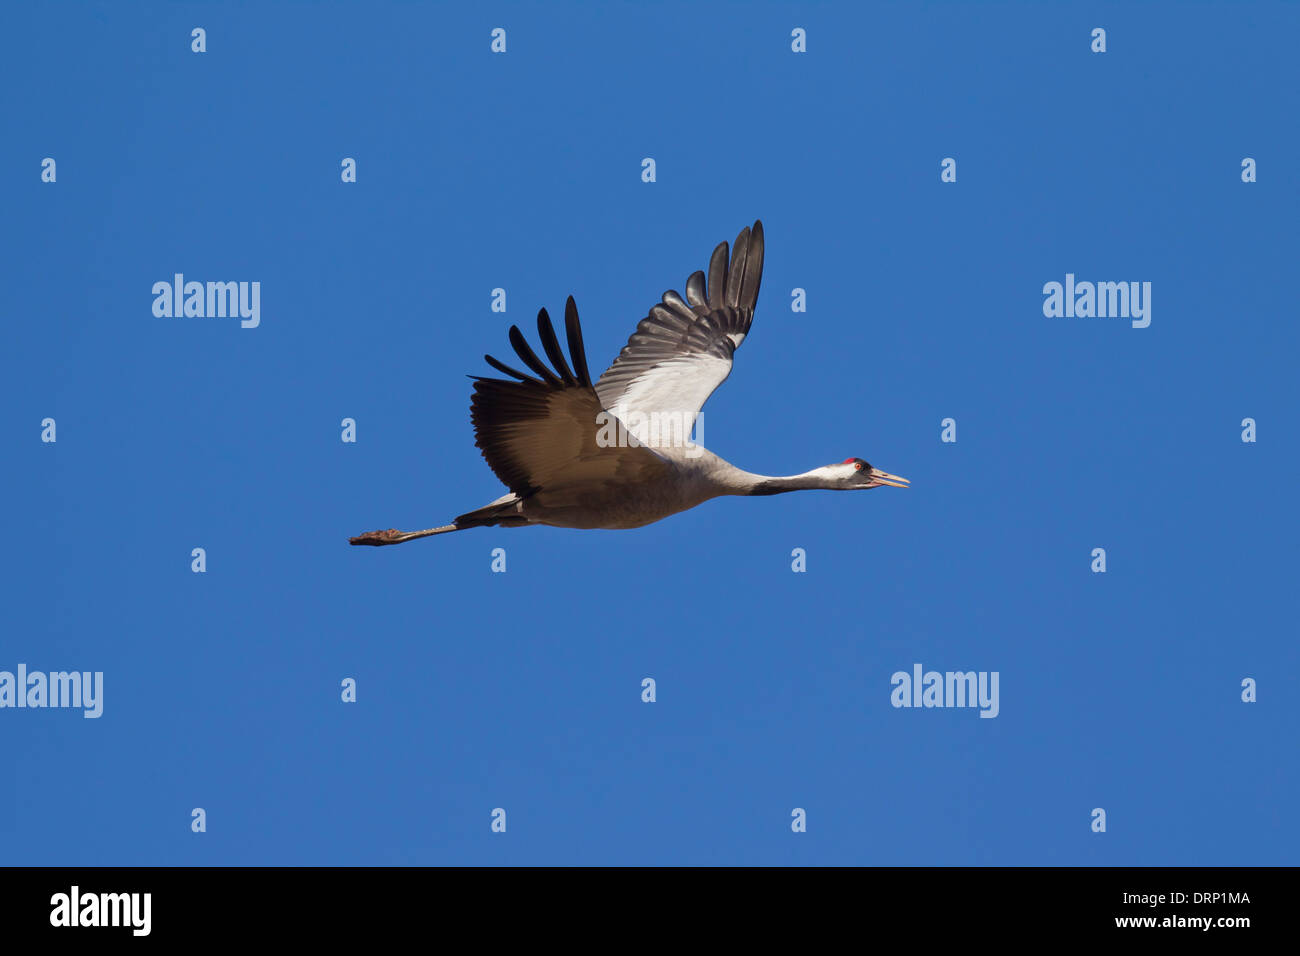 Common Crane / Eurasian Crane (Grus grus) flying against blue sky Stock Photo